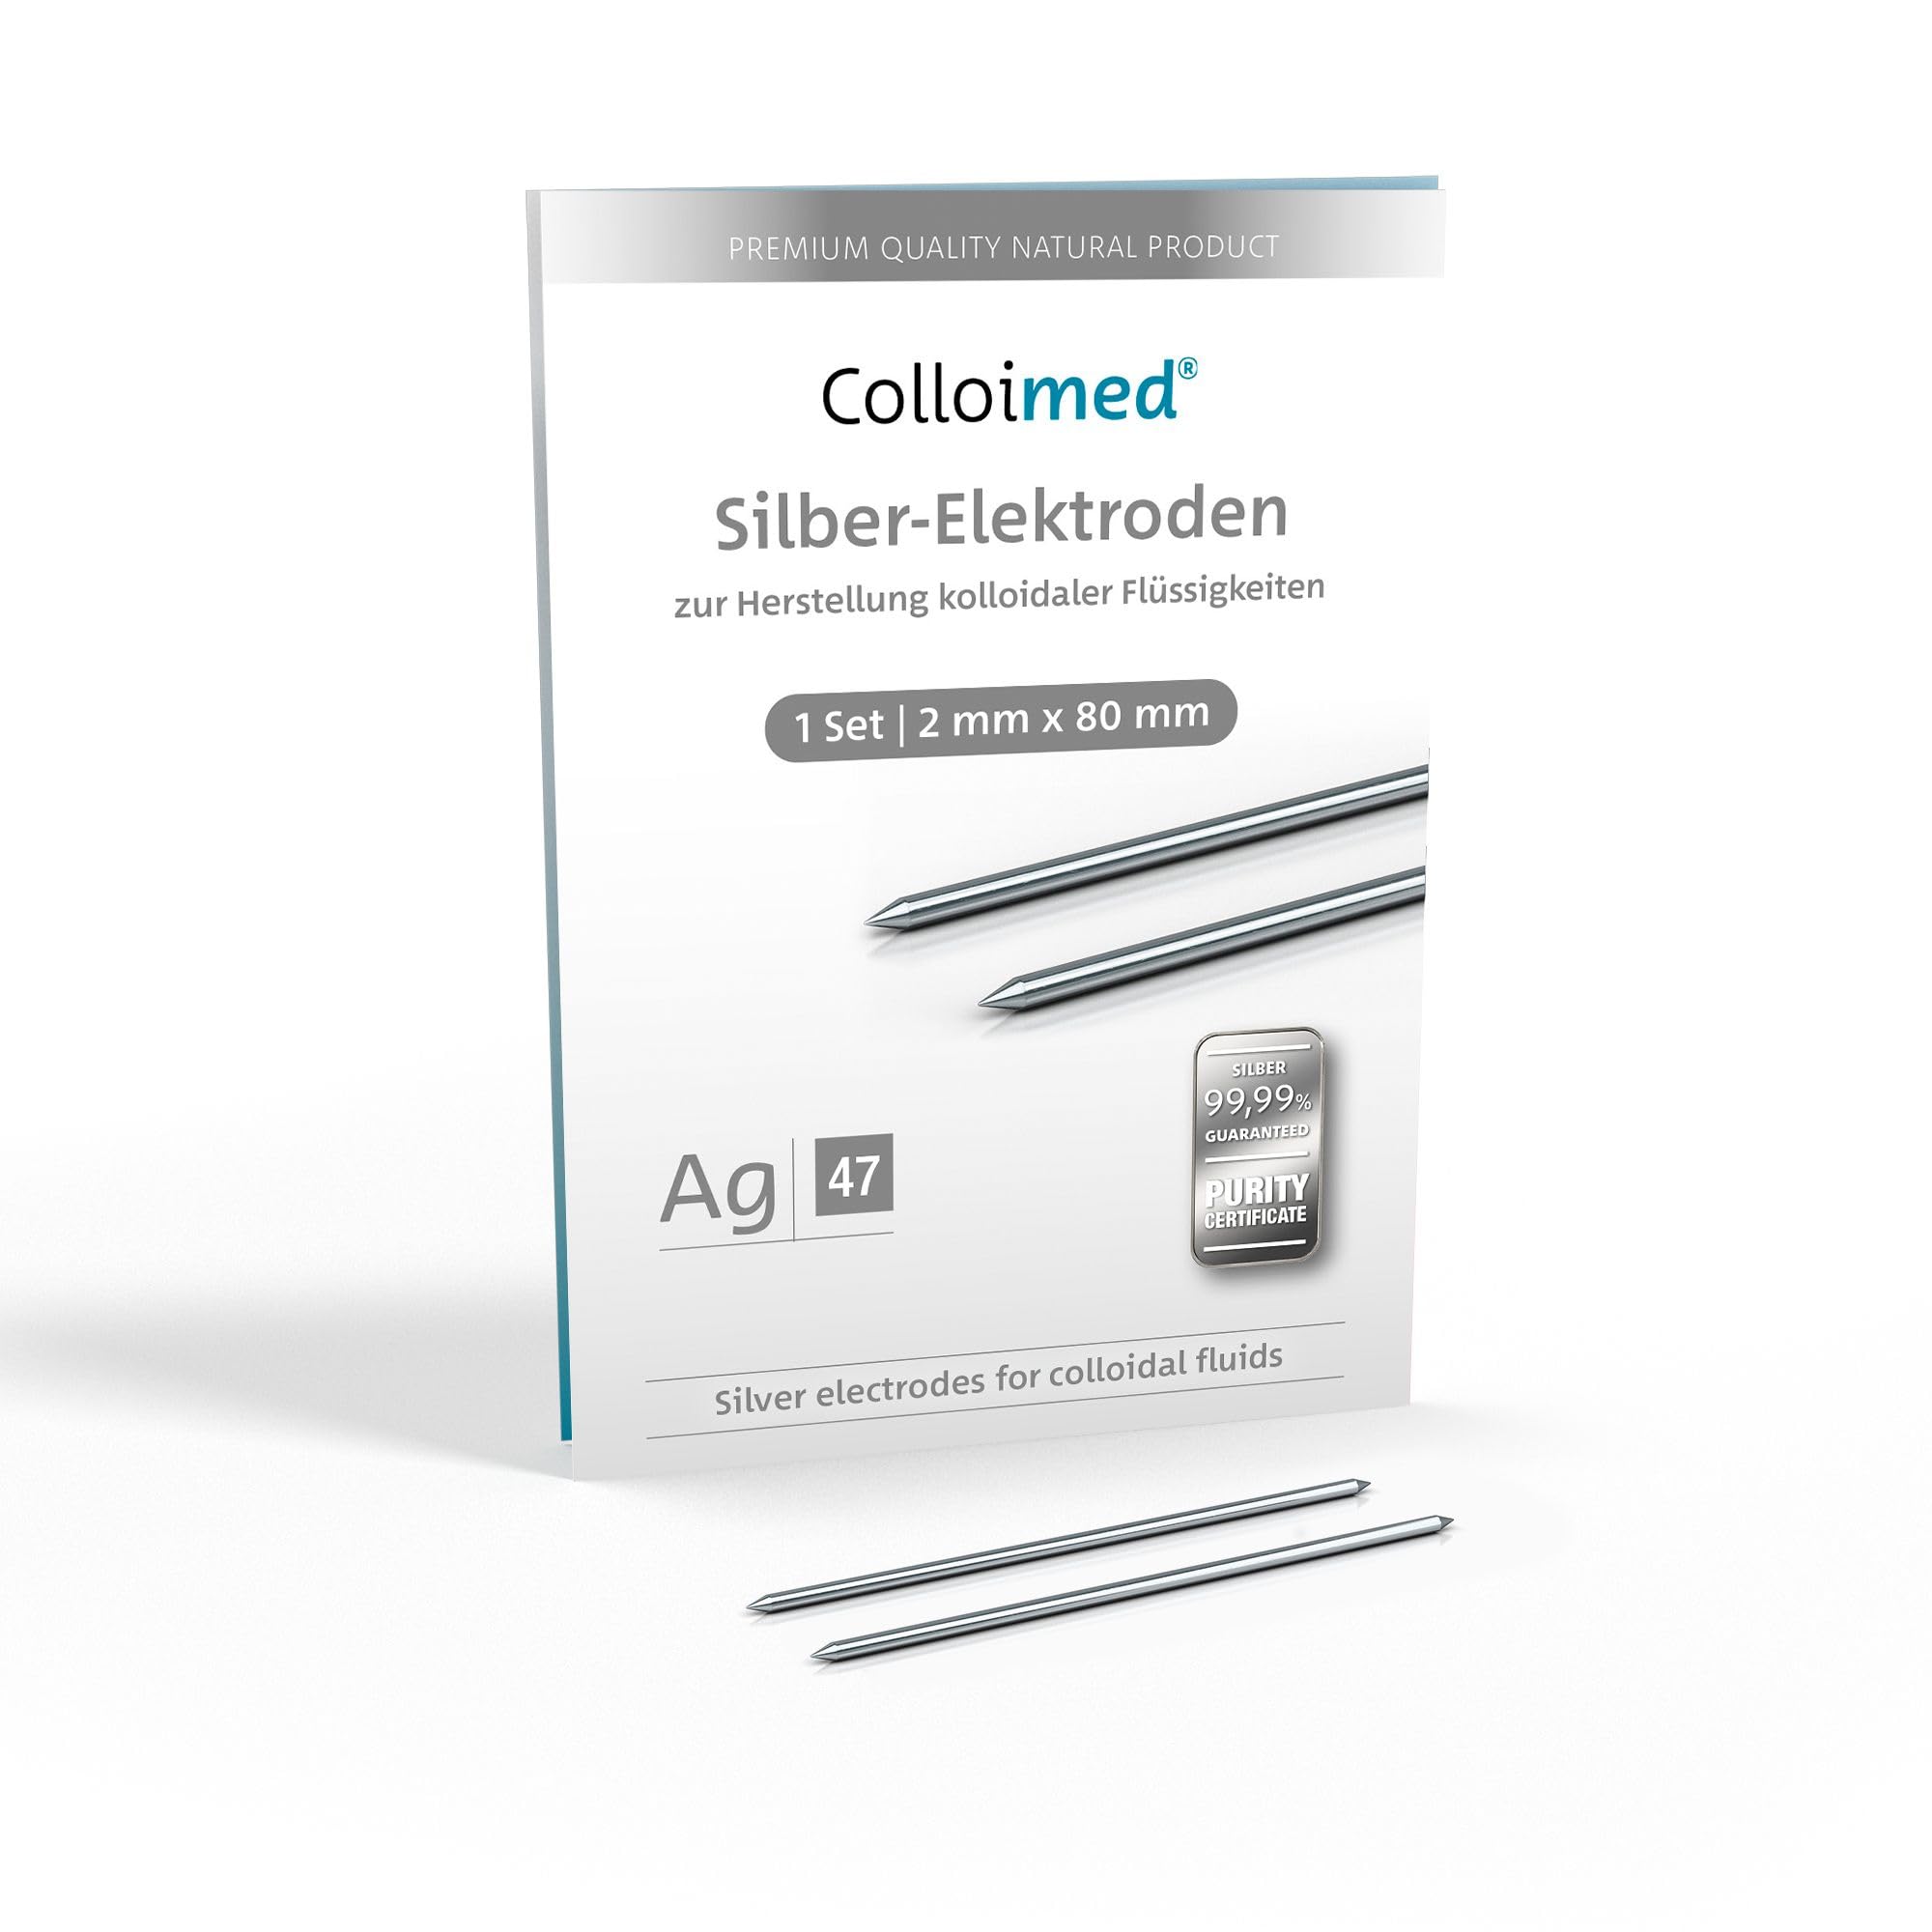 Colloimed Silber-Elektroden 1 Paar 2mm x 80mm für CM-Serie (Ag 2x80)